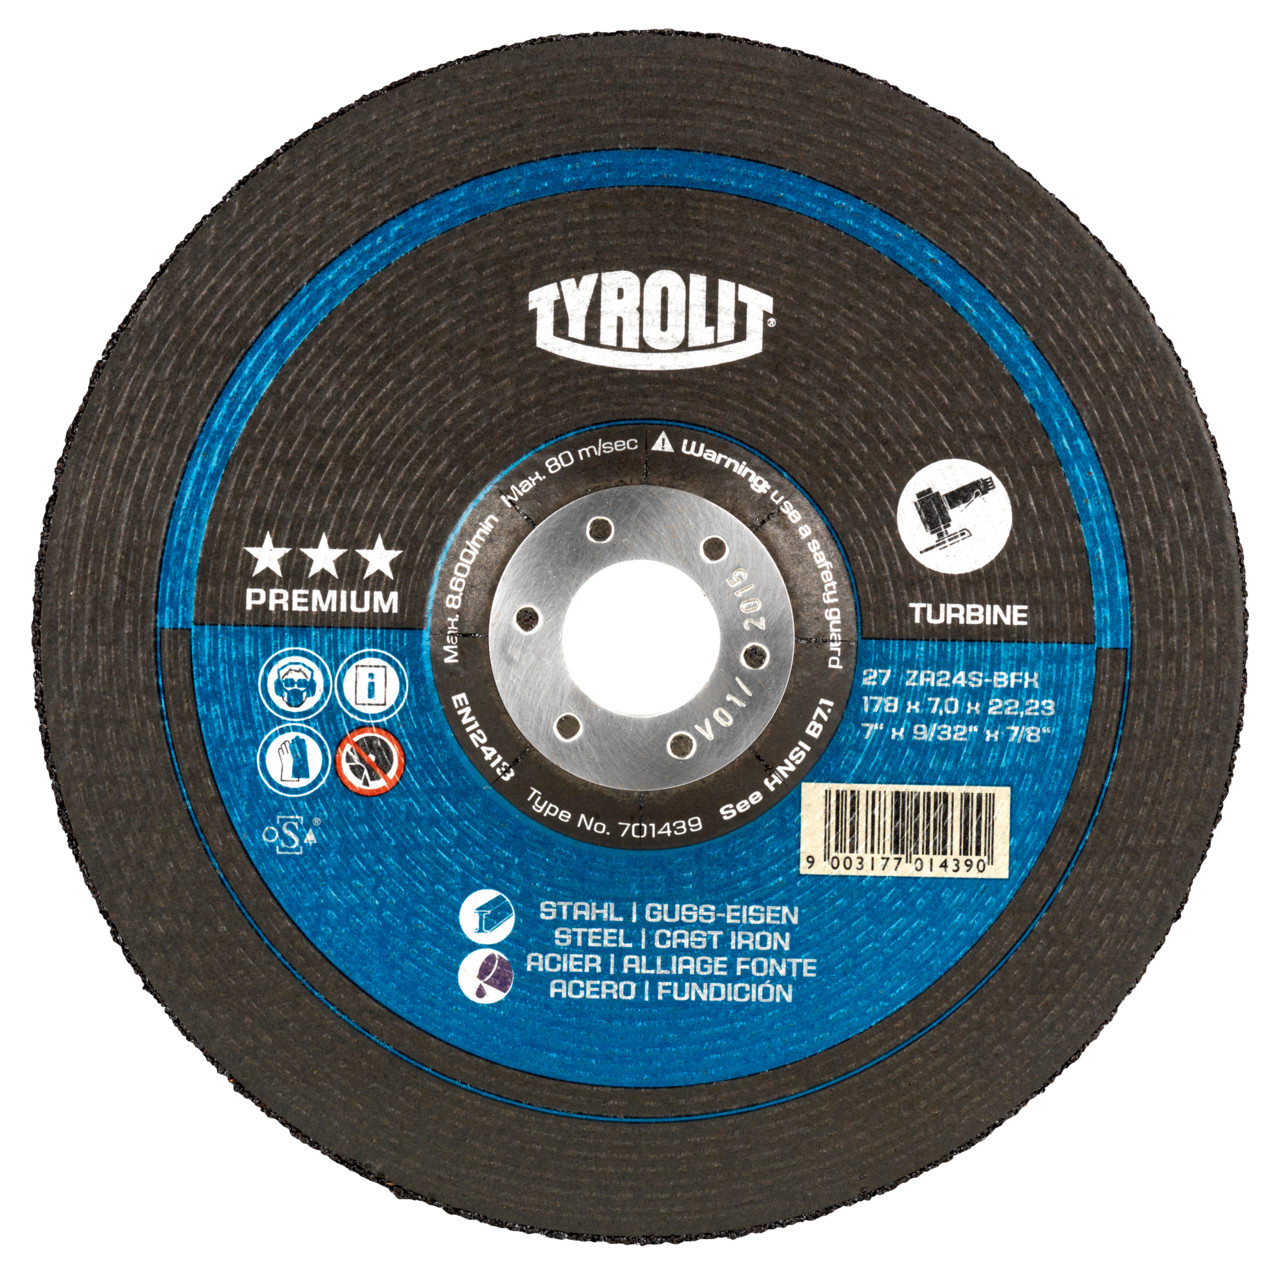 TYROLIT disco de desbaste DxUxH 230x7x22,23 T-GRIND para acero y fundición, forma: 27 - versión offset, Art. 701515